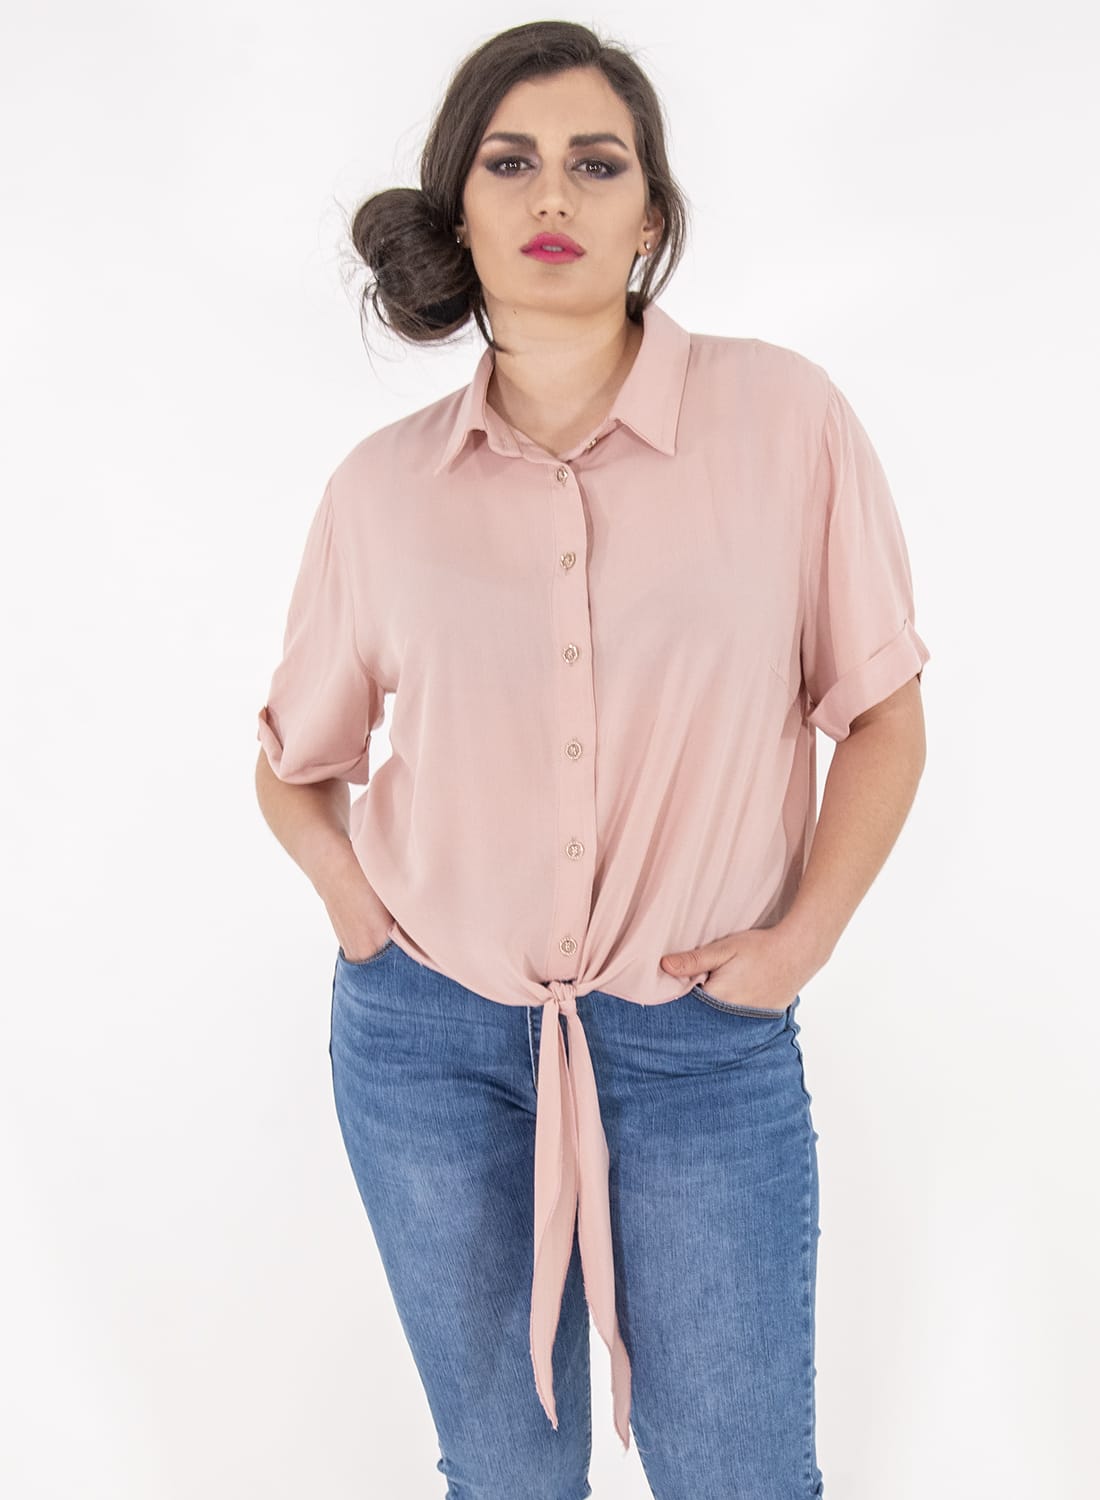 Ροζ κοντό πουκάμισο με φιόγκο